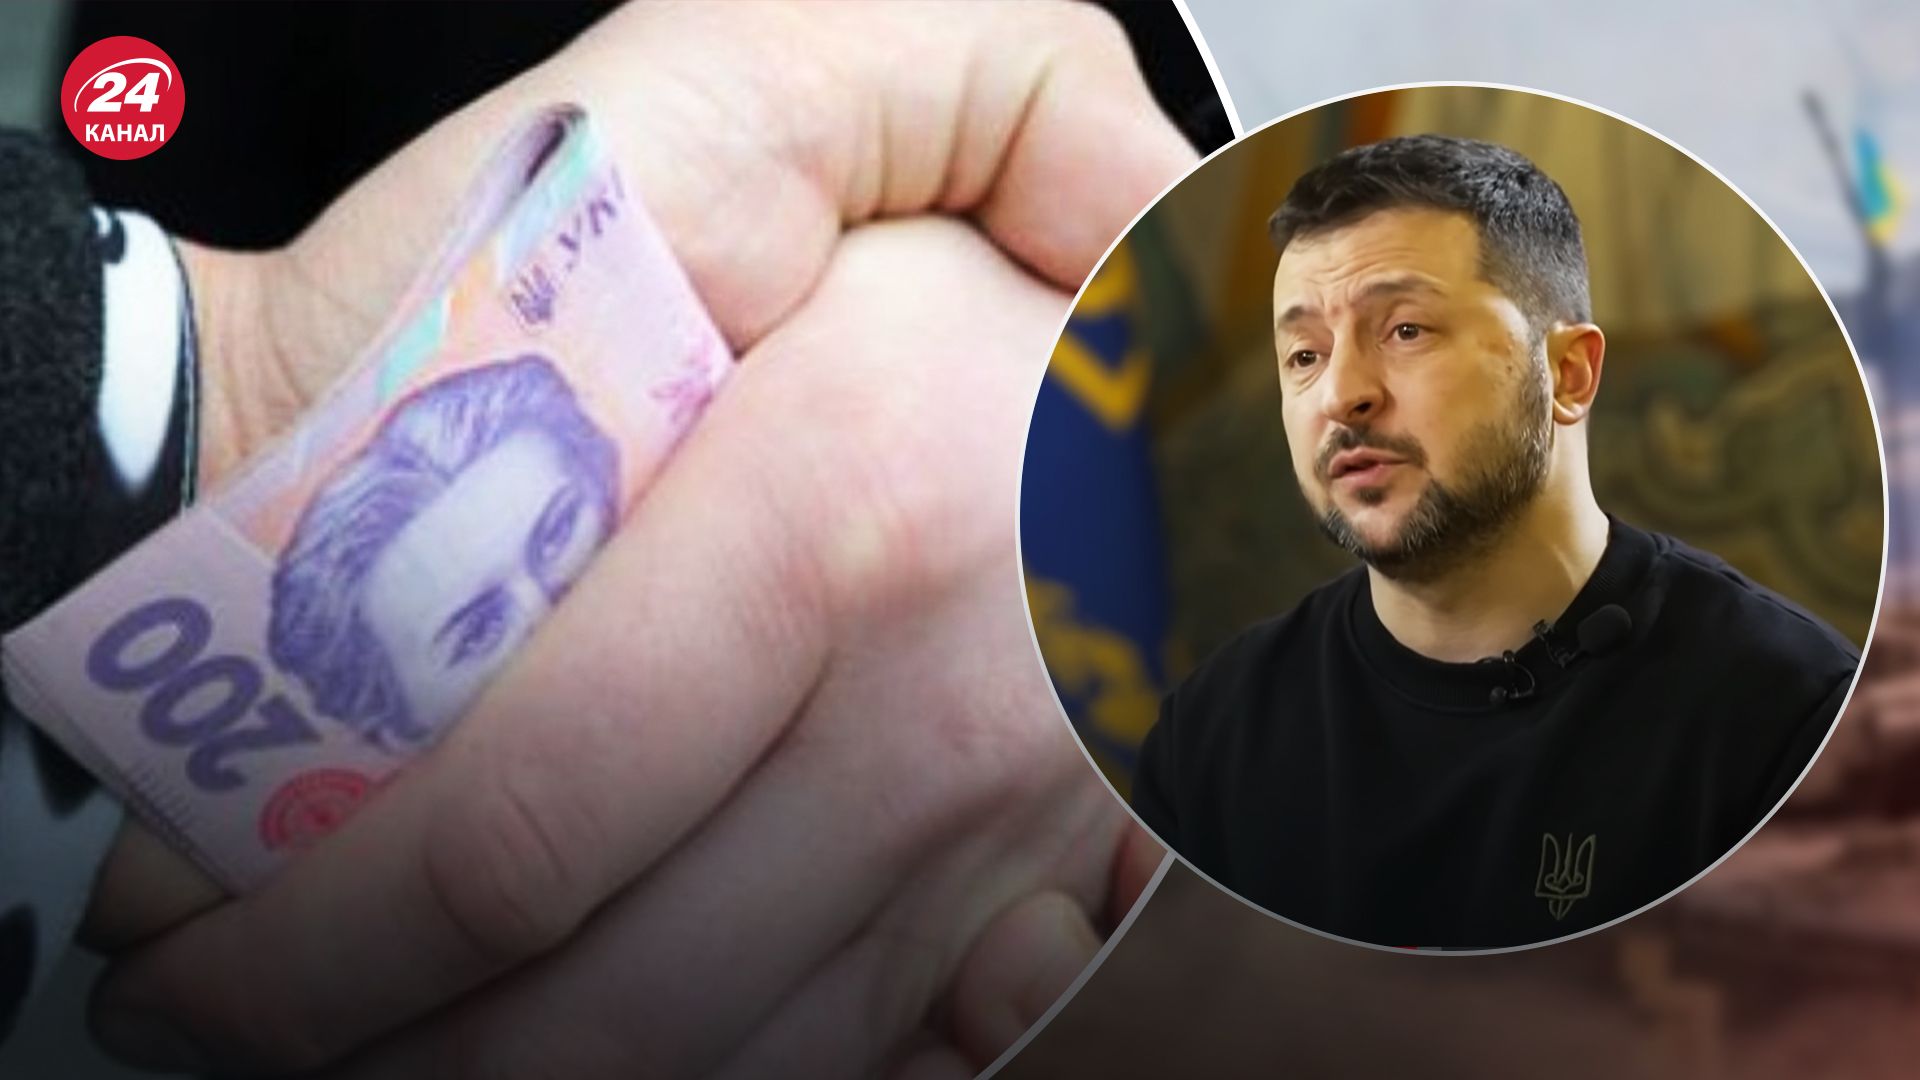 Зеленський висловився про корупційні скандали в Україні